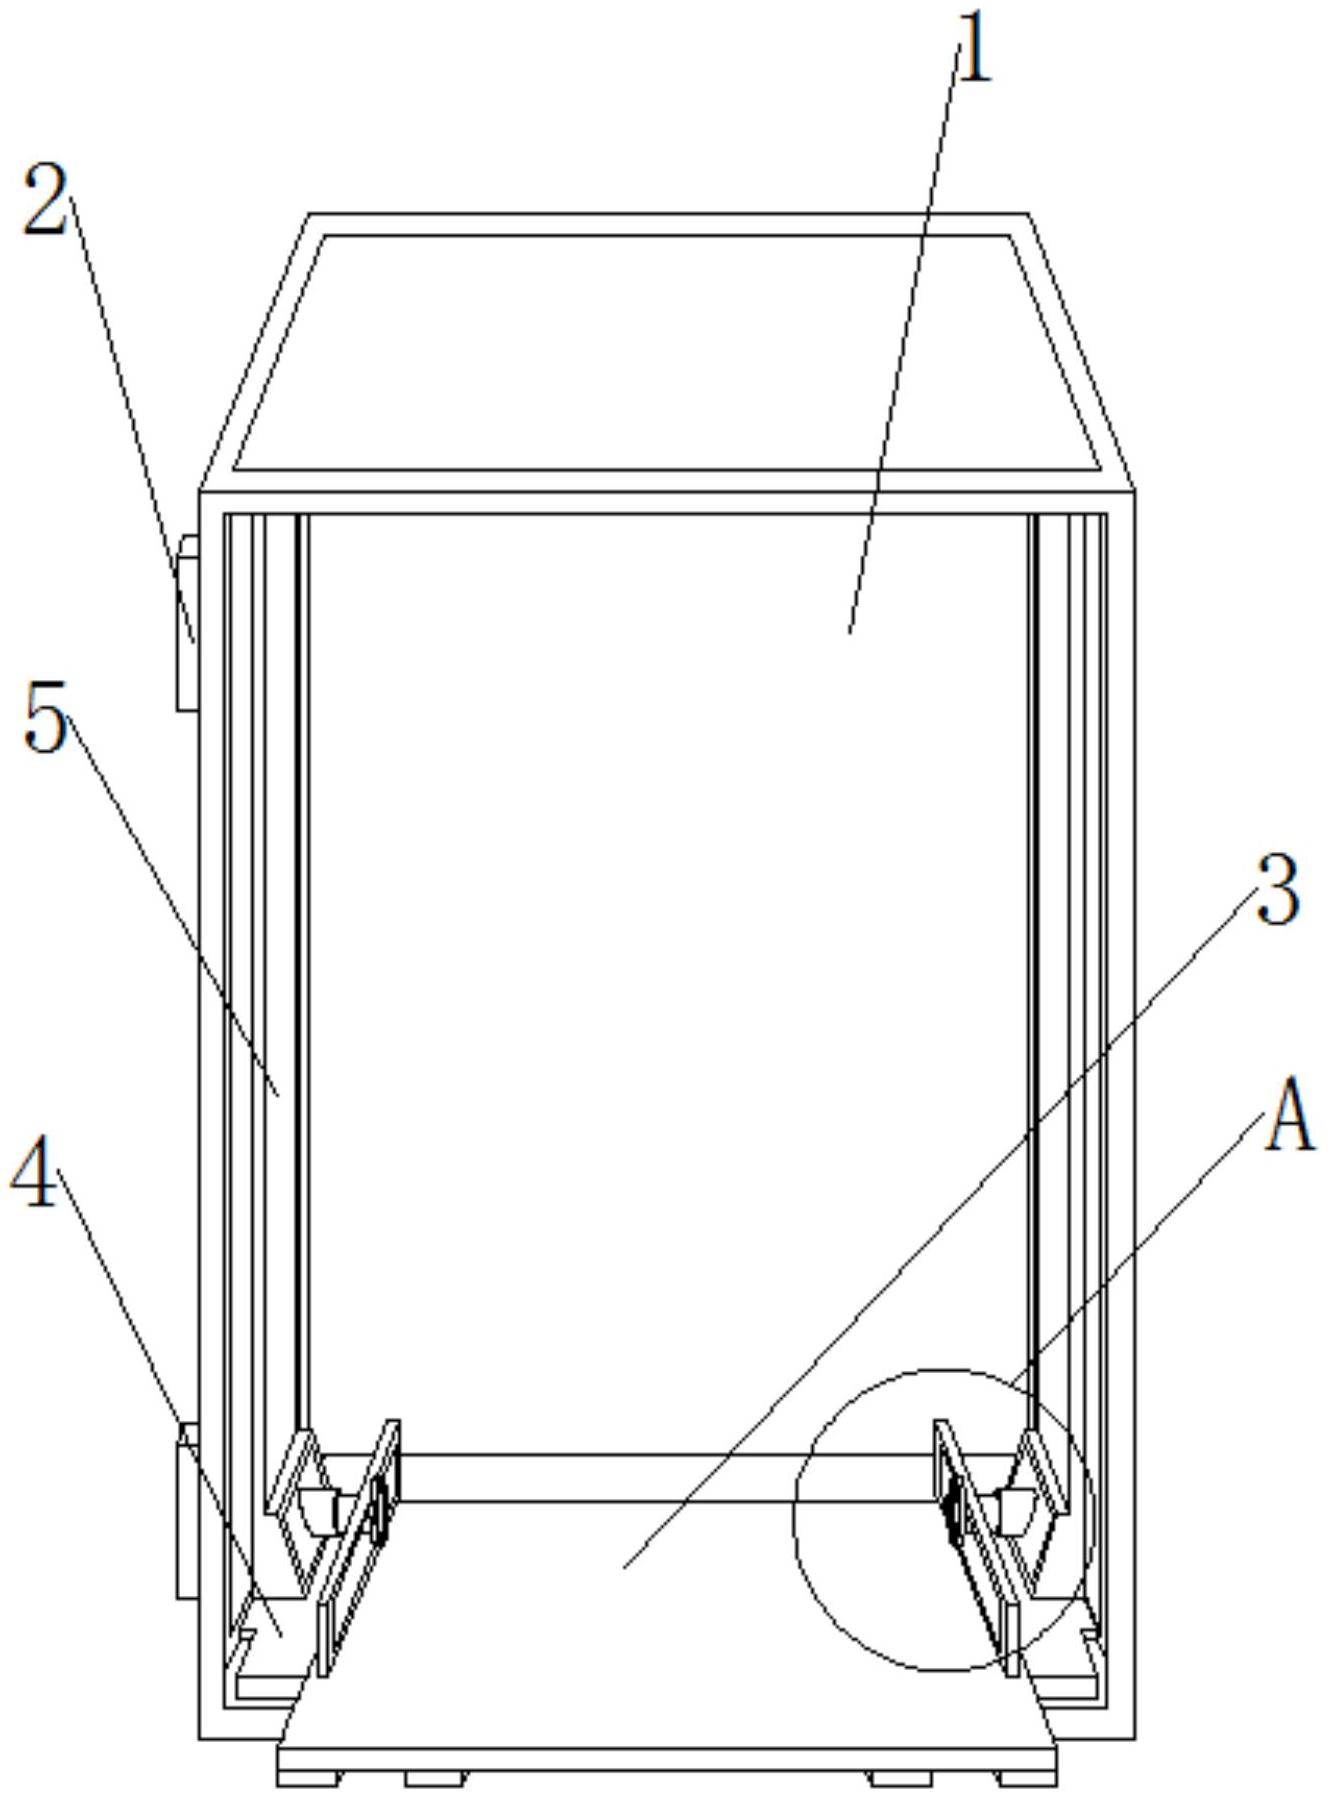 一种便于检修的燃气壁挂炉壳体专利图